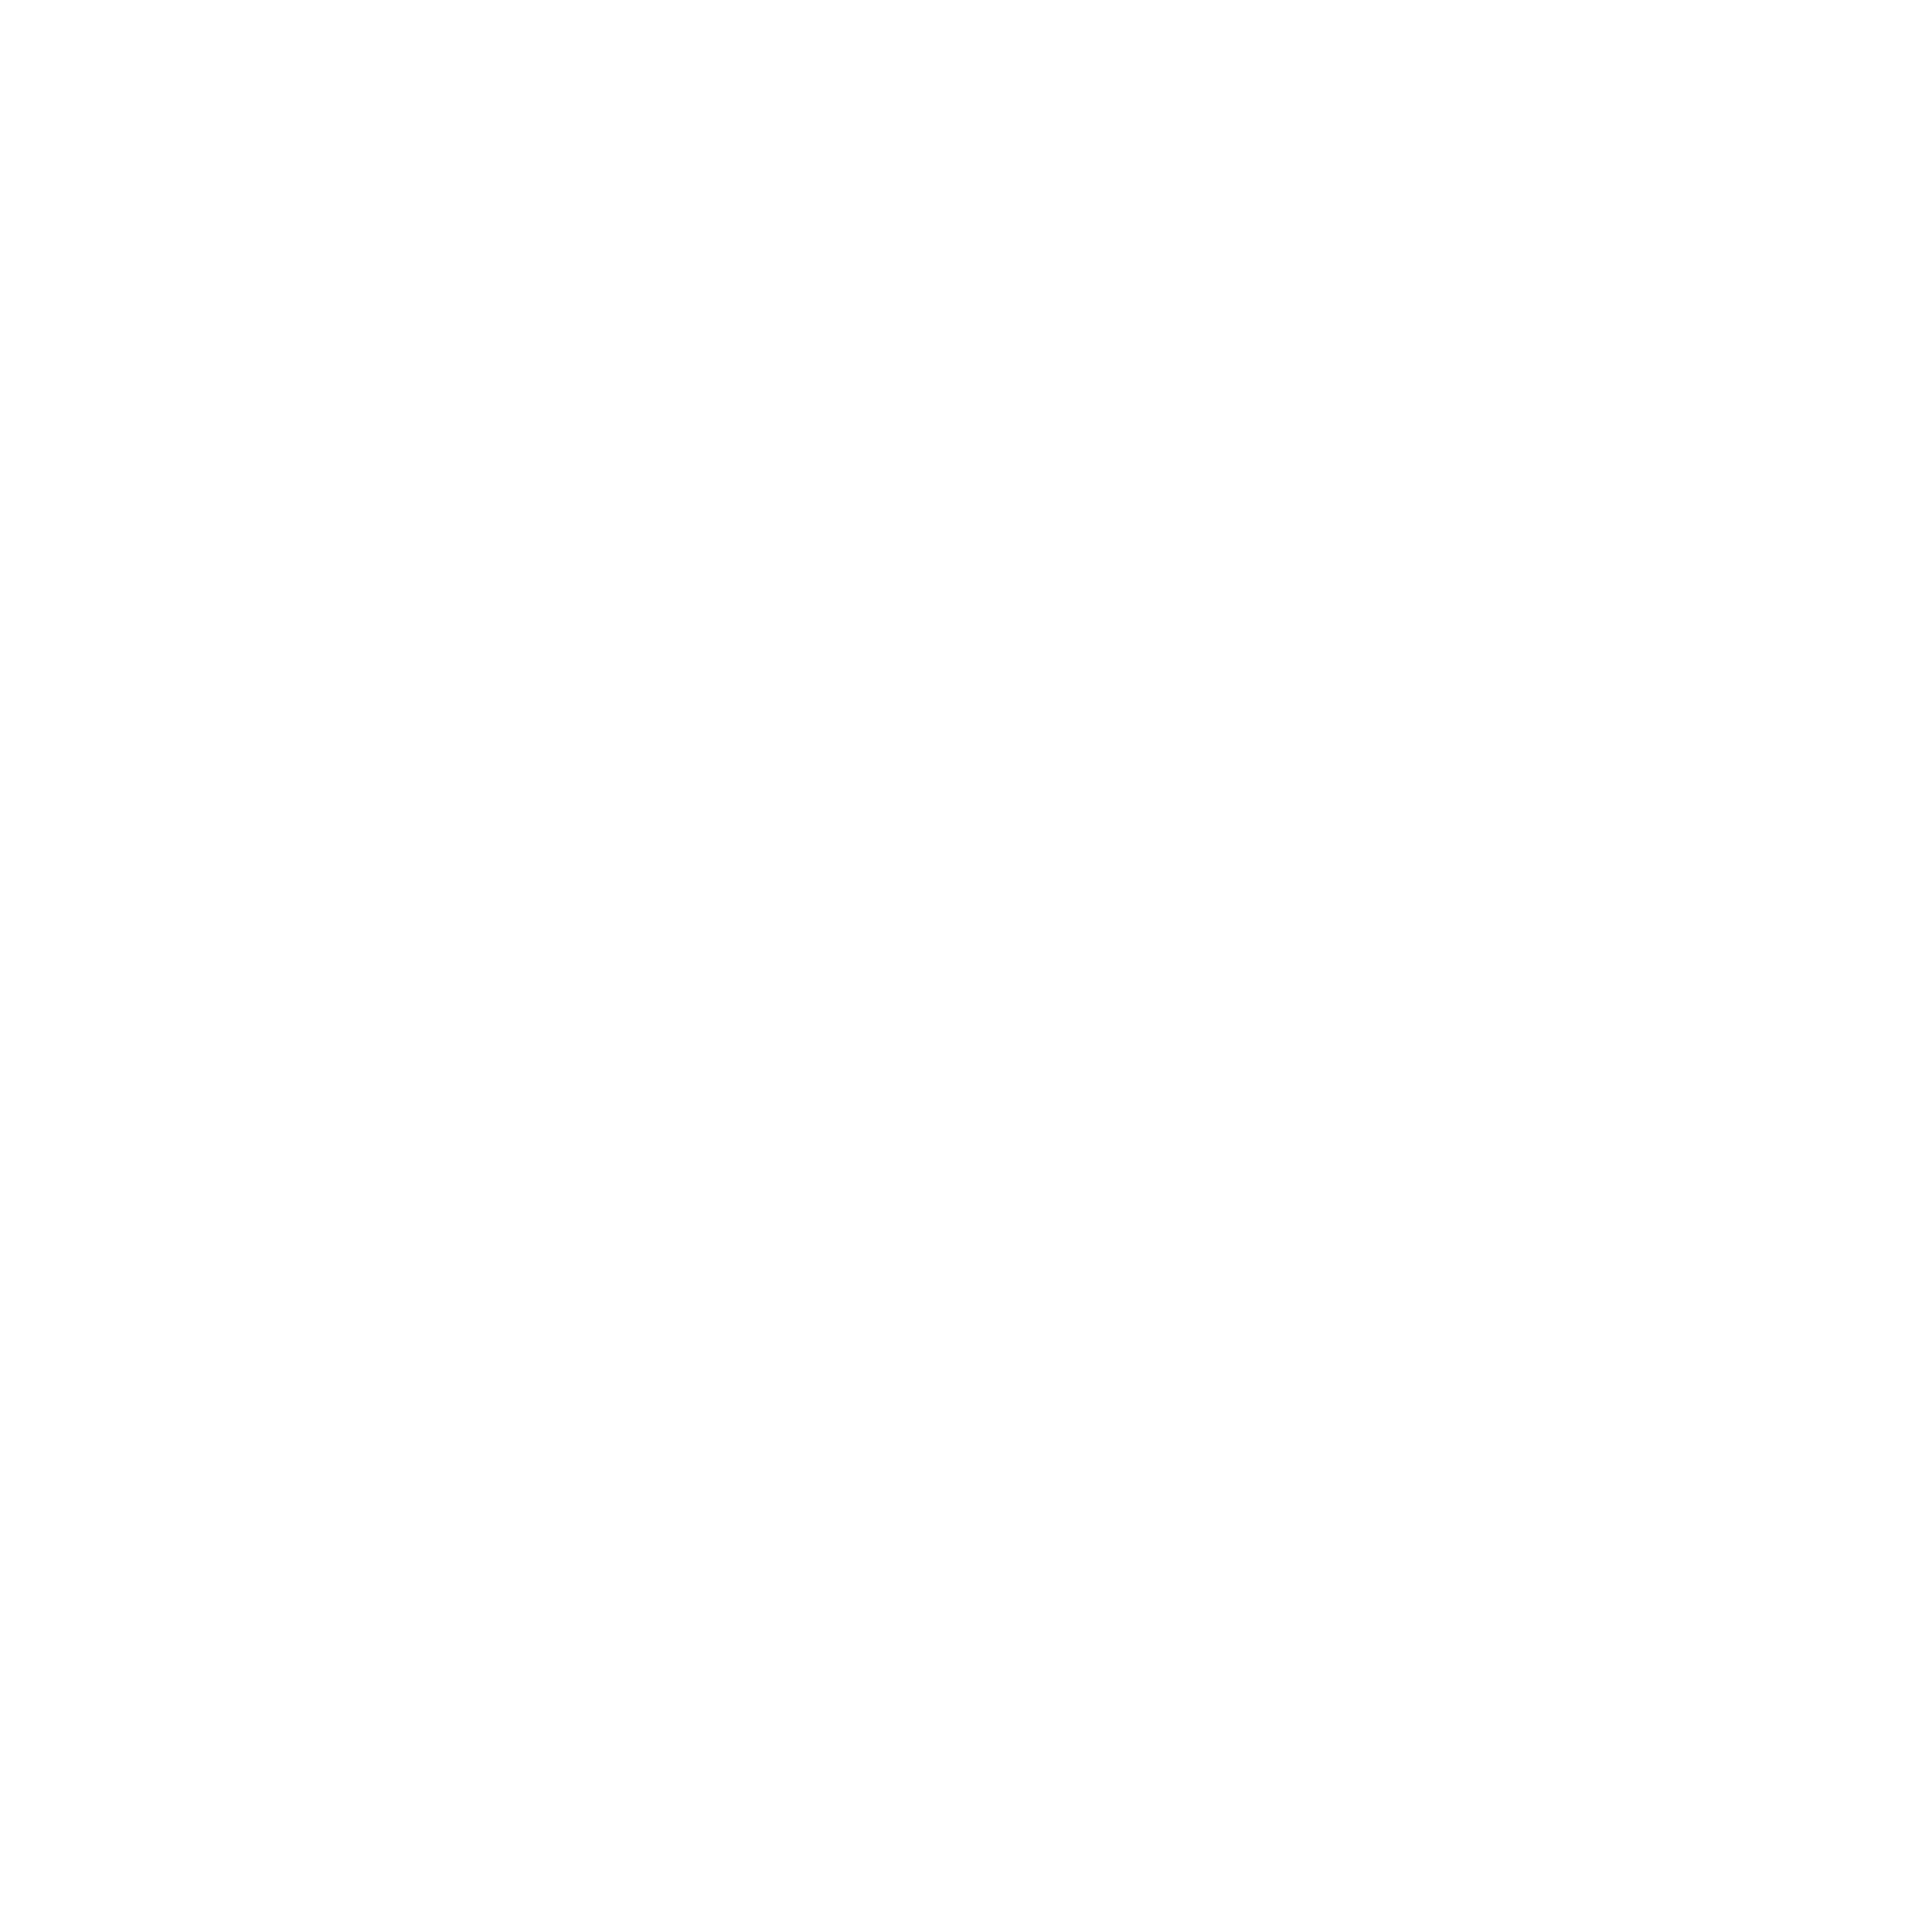 OTT BOX